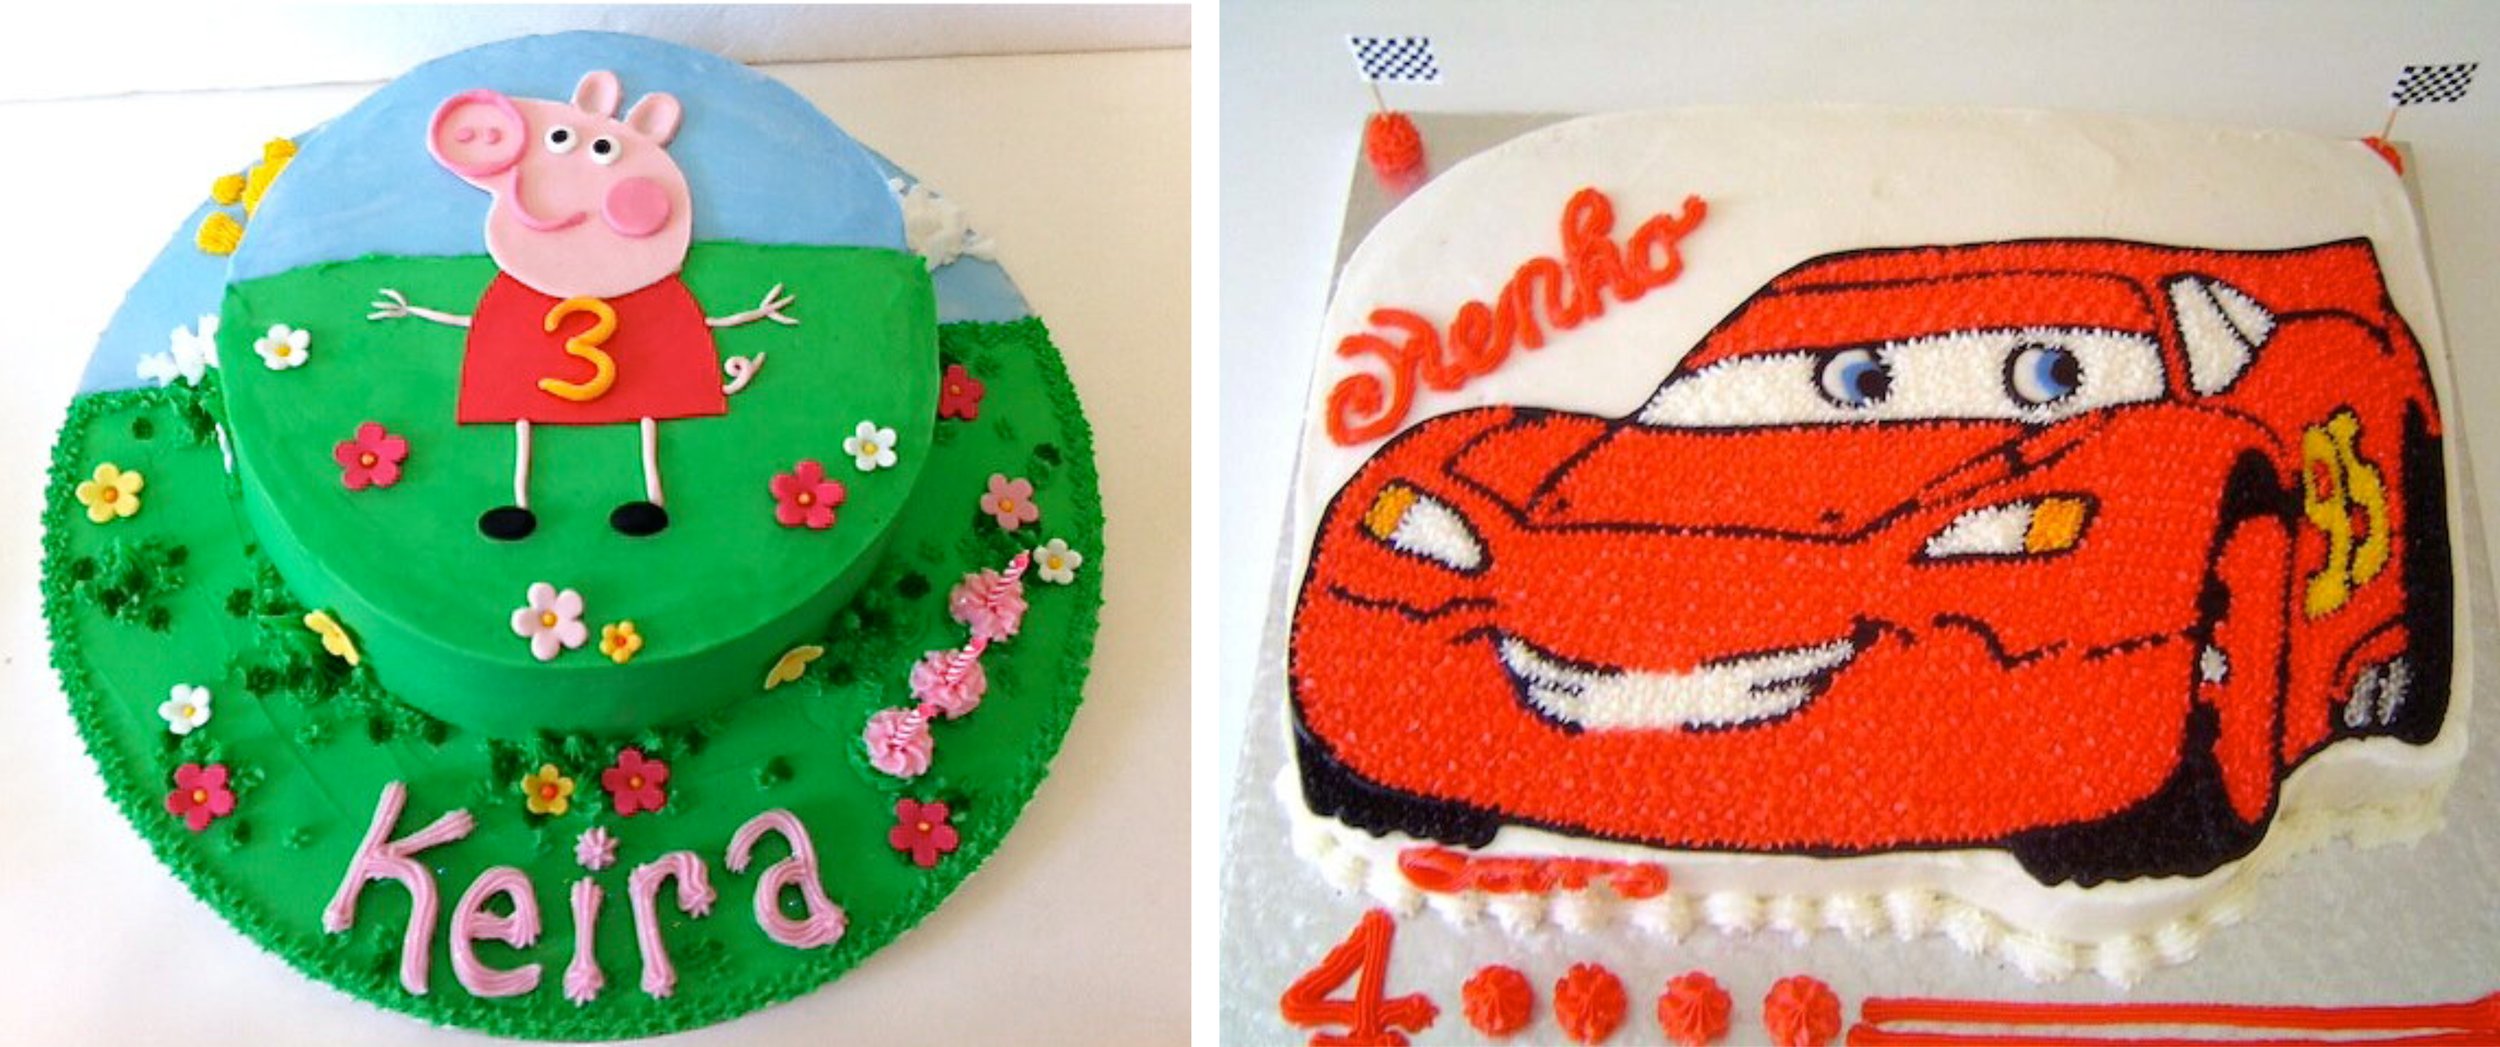 Cakes Anamorphic Birthday 7.jpg